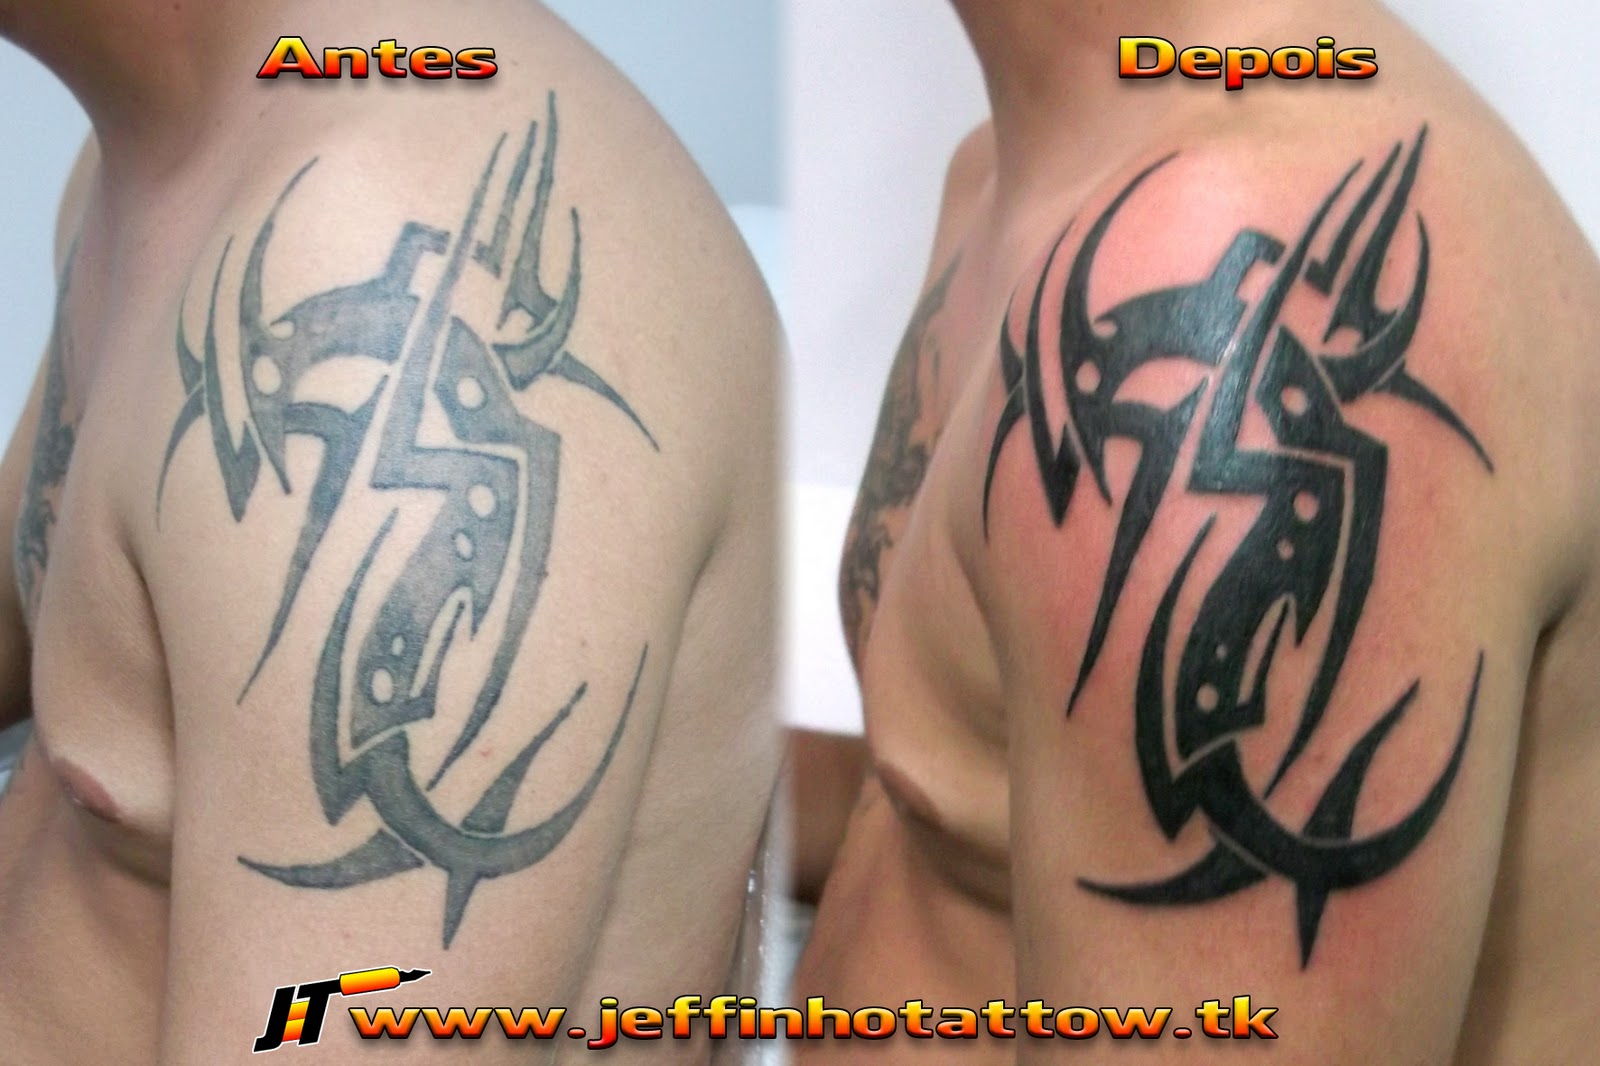 Jeffinho Tattow - Tatuador - Campo Mourão - Paraná - Brasil: 2012